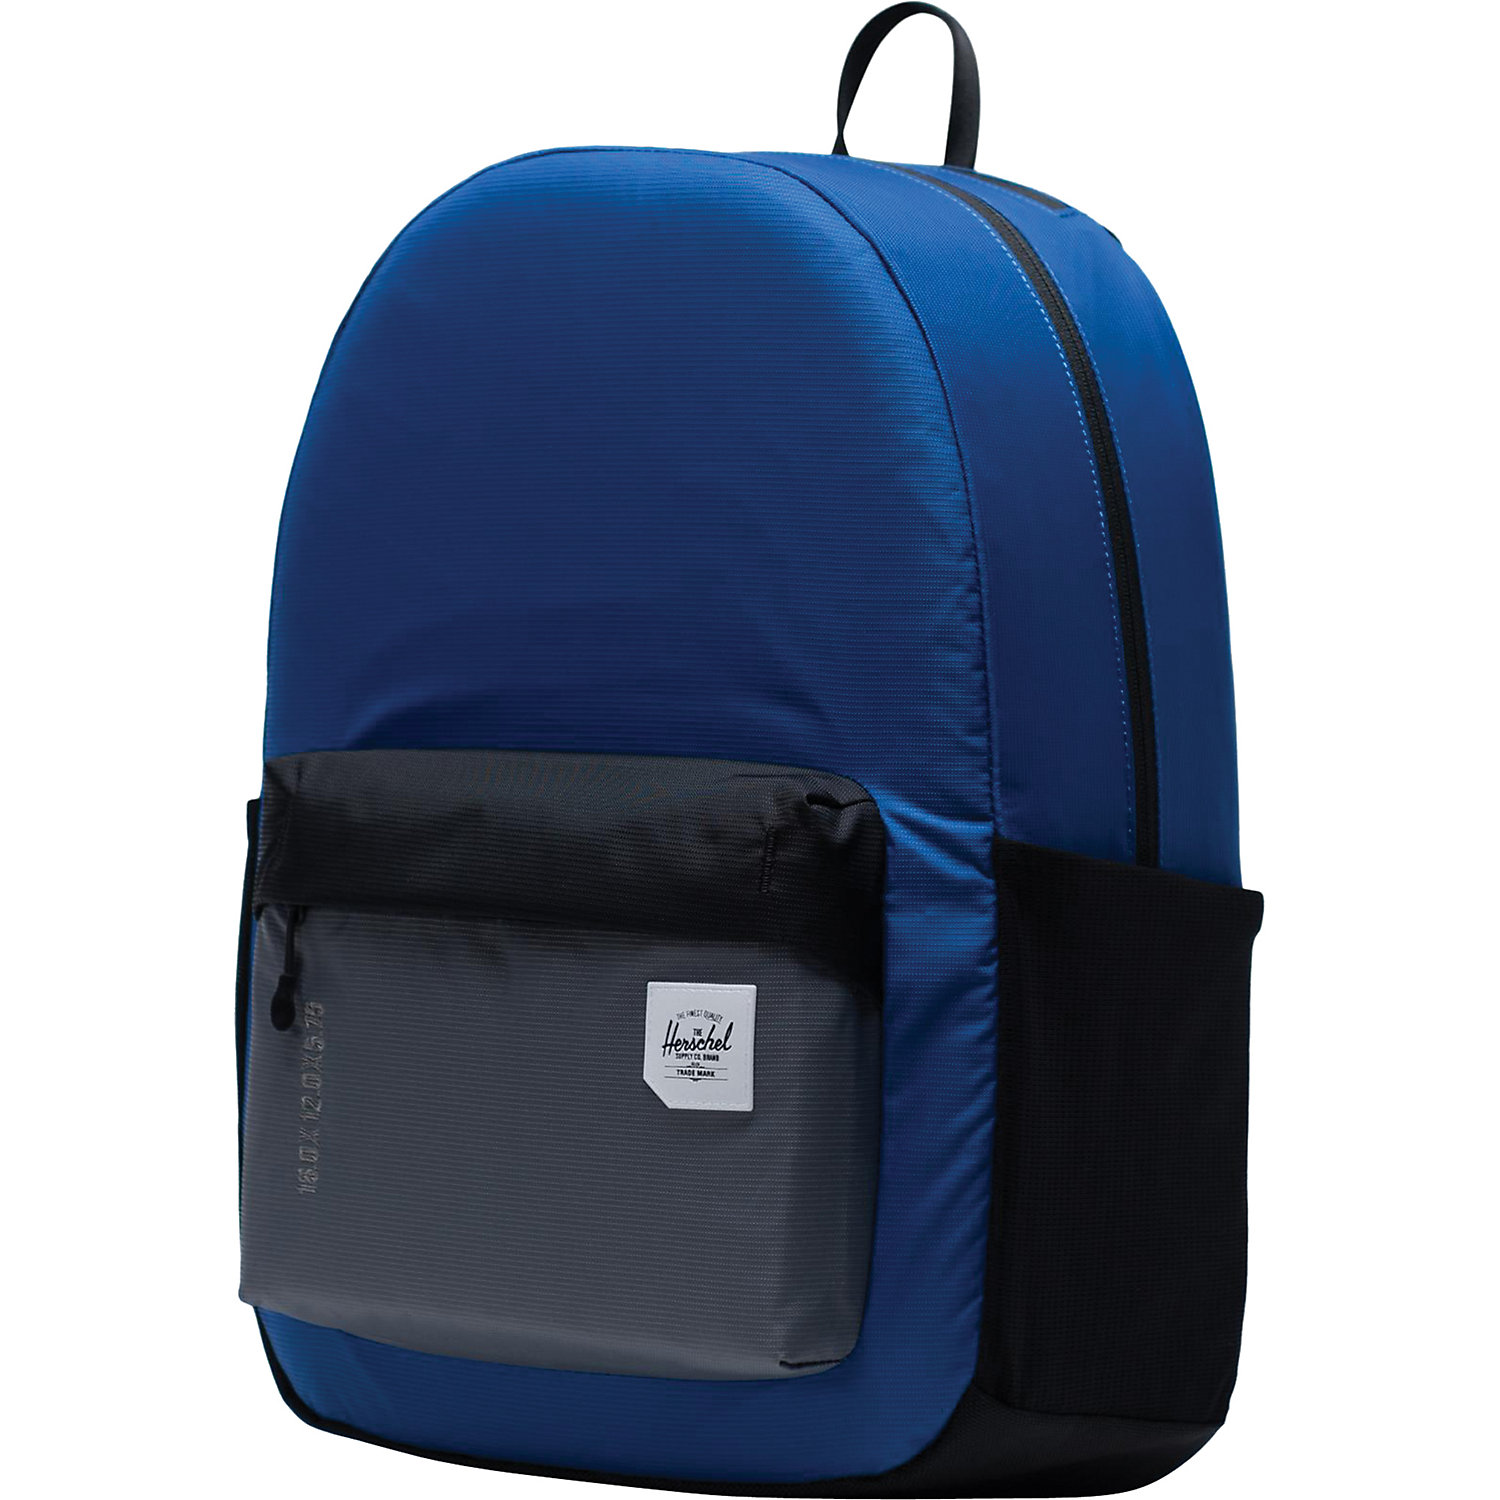 Herschel Supply Co Rundle Backpack